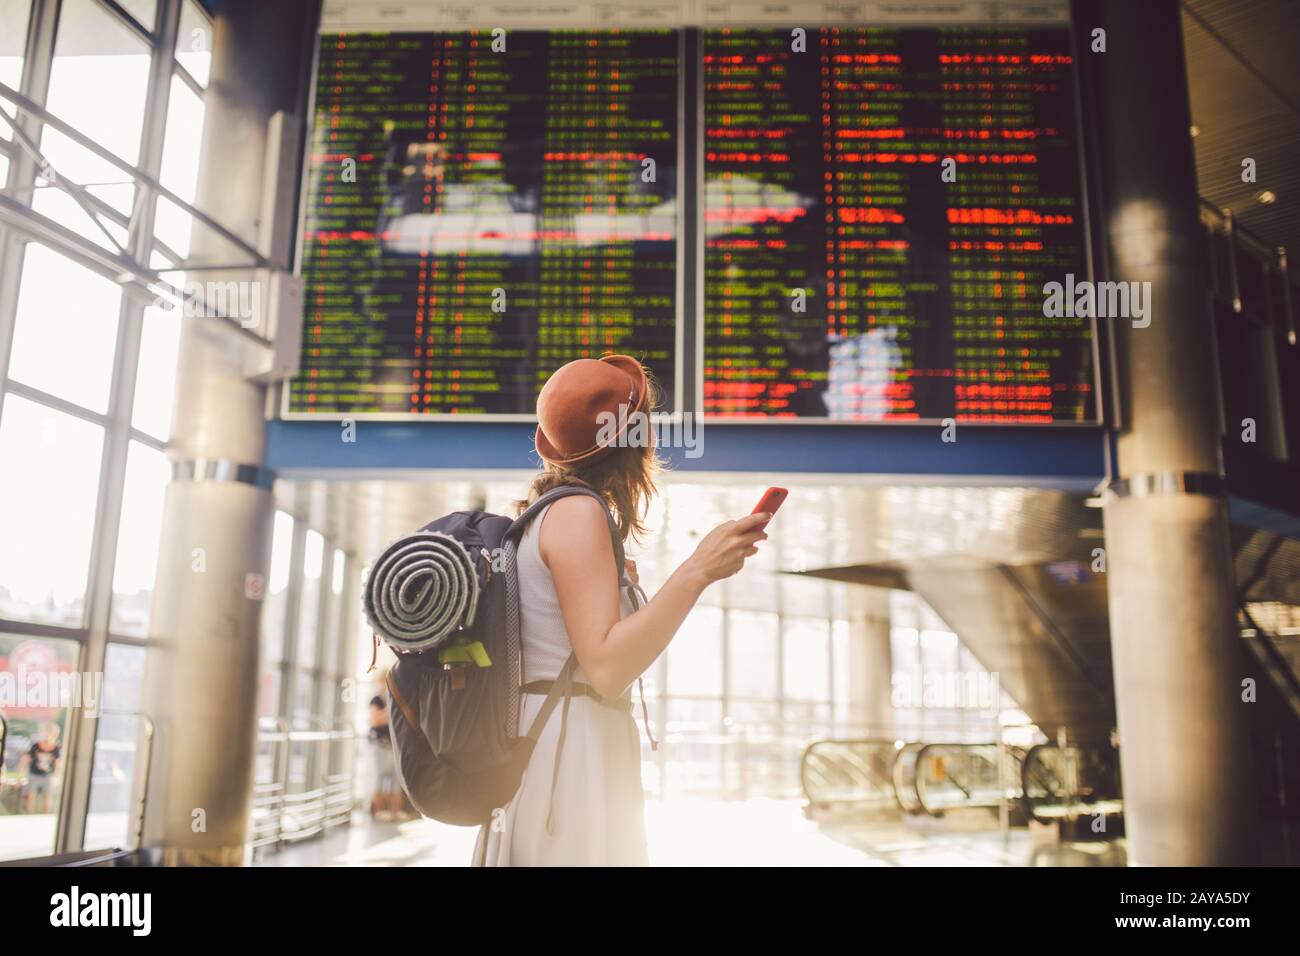 Themenreise und Tranosport. Schöne junge kaukasische Frau im Kleid und Rucksack, die im Bahnhof oder Terminal Loo steht Stockfoto